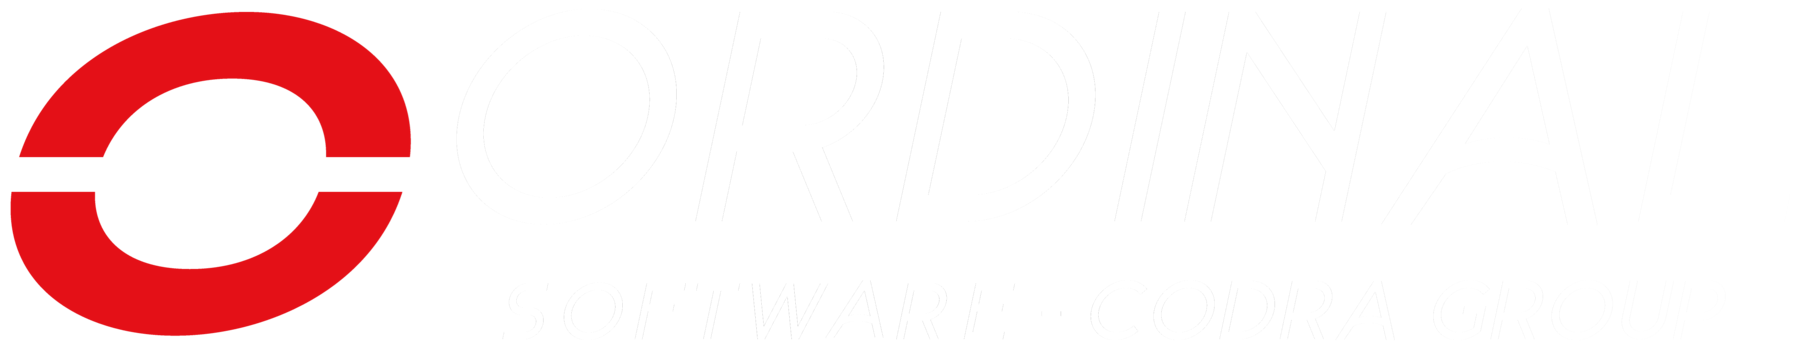 Logo Ordinal Software Codra group fond noir